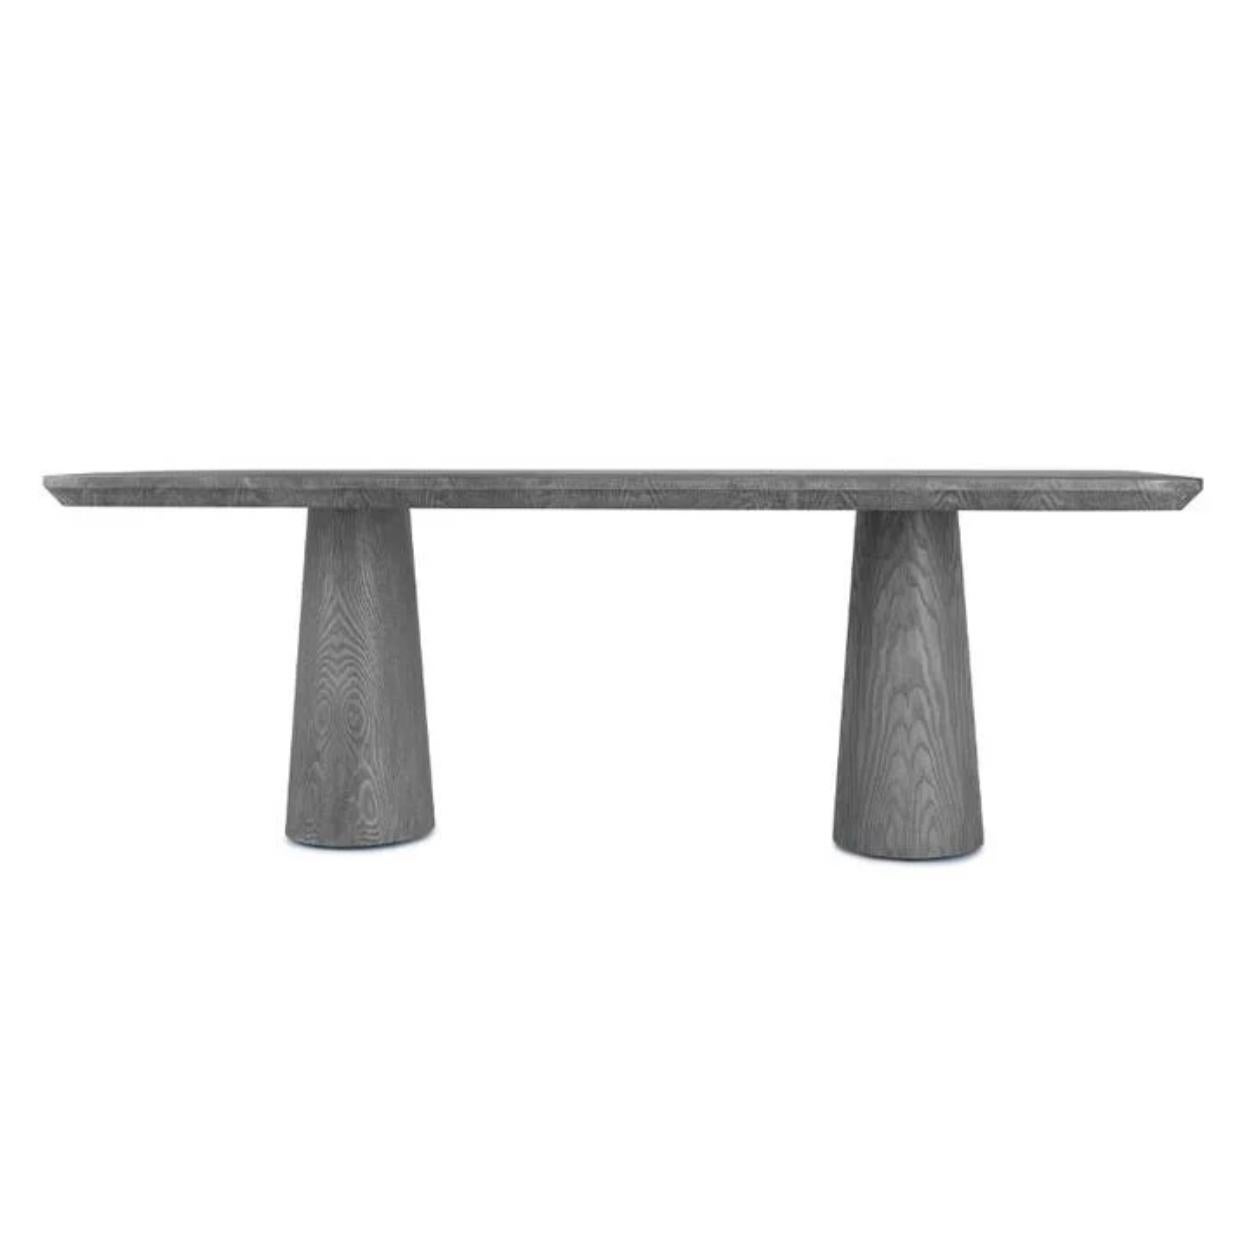 La table à manger Ingrid rappelle le meilleur du mobilier danois dans une version moderne pour aujourd'hui. Des bases ovales et un bord épuré sont les détails qui distinguent cette table. Le bois de châtaignier est disponible en version naturelle ou